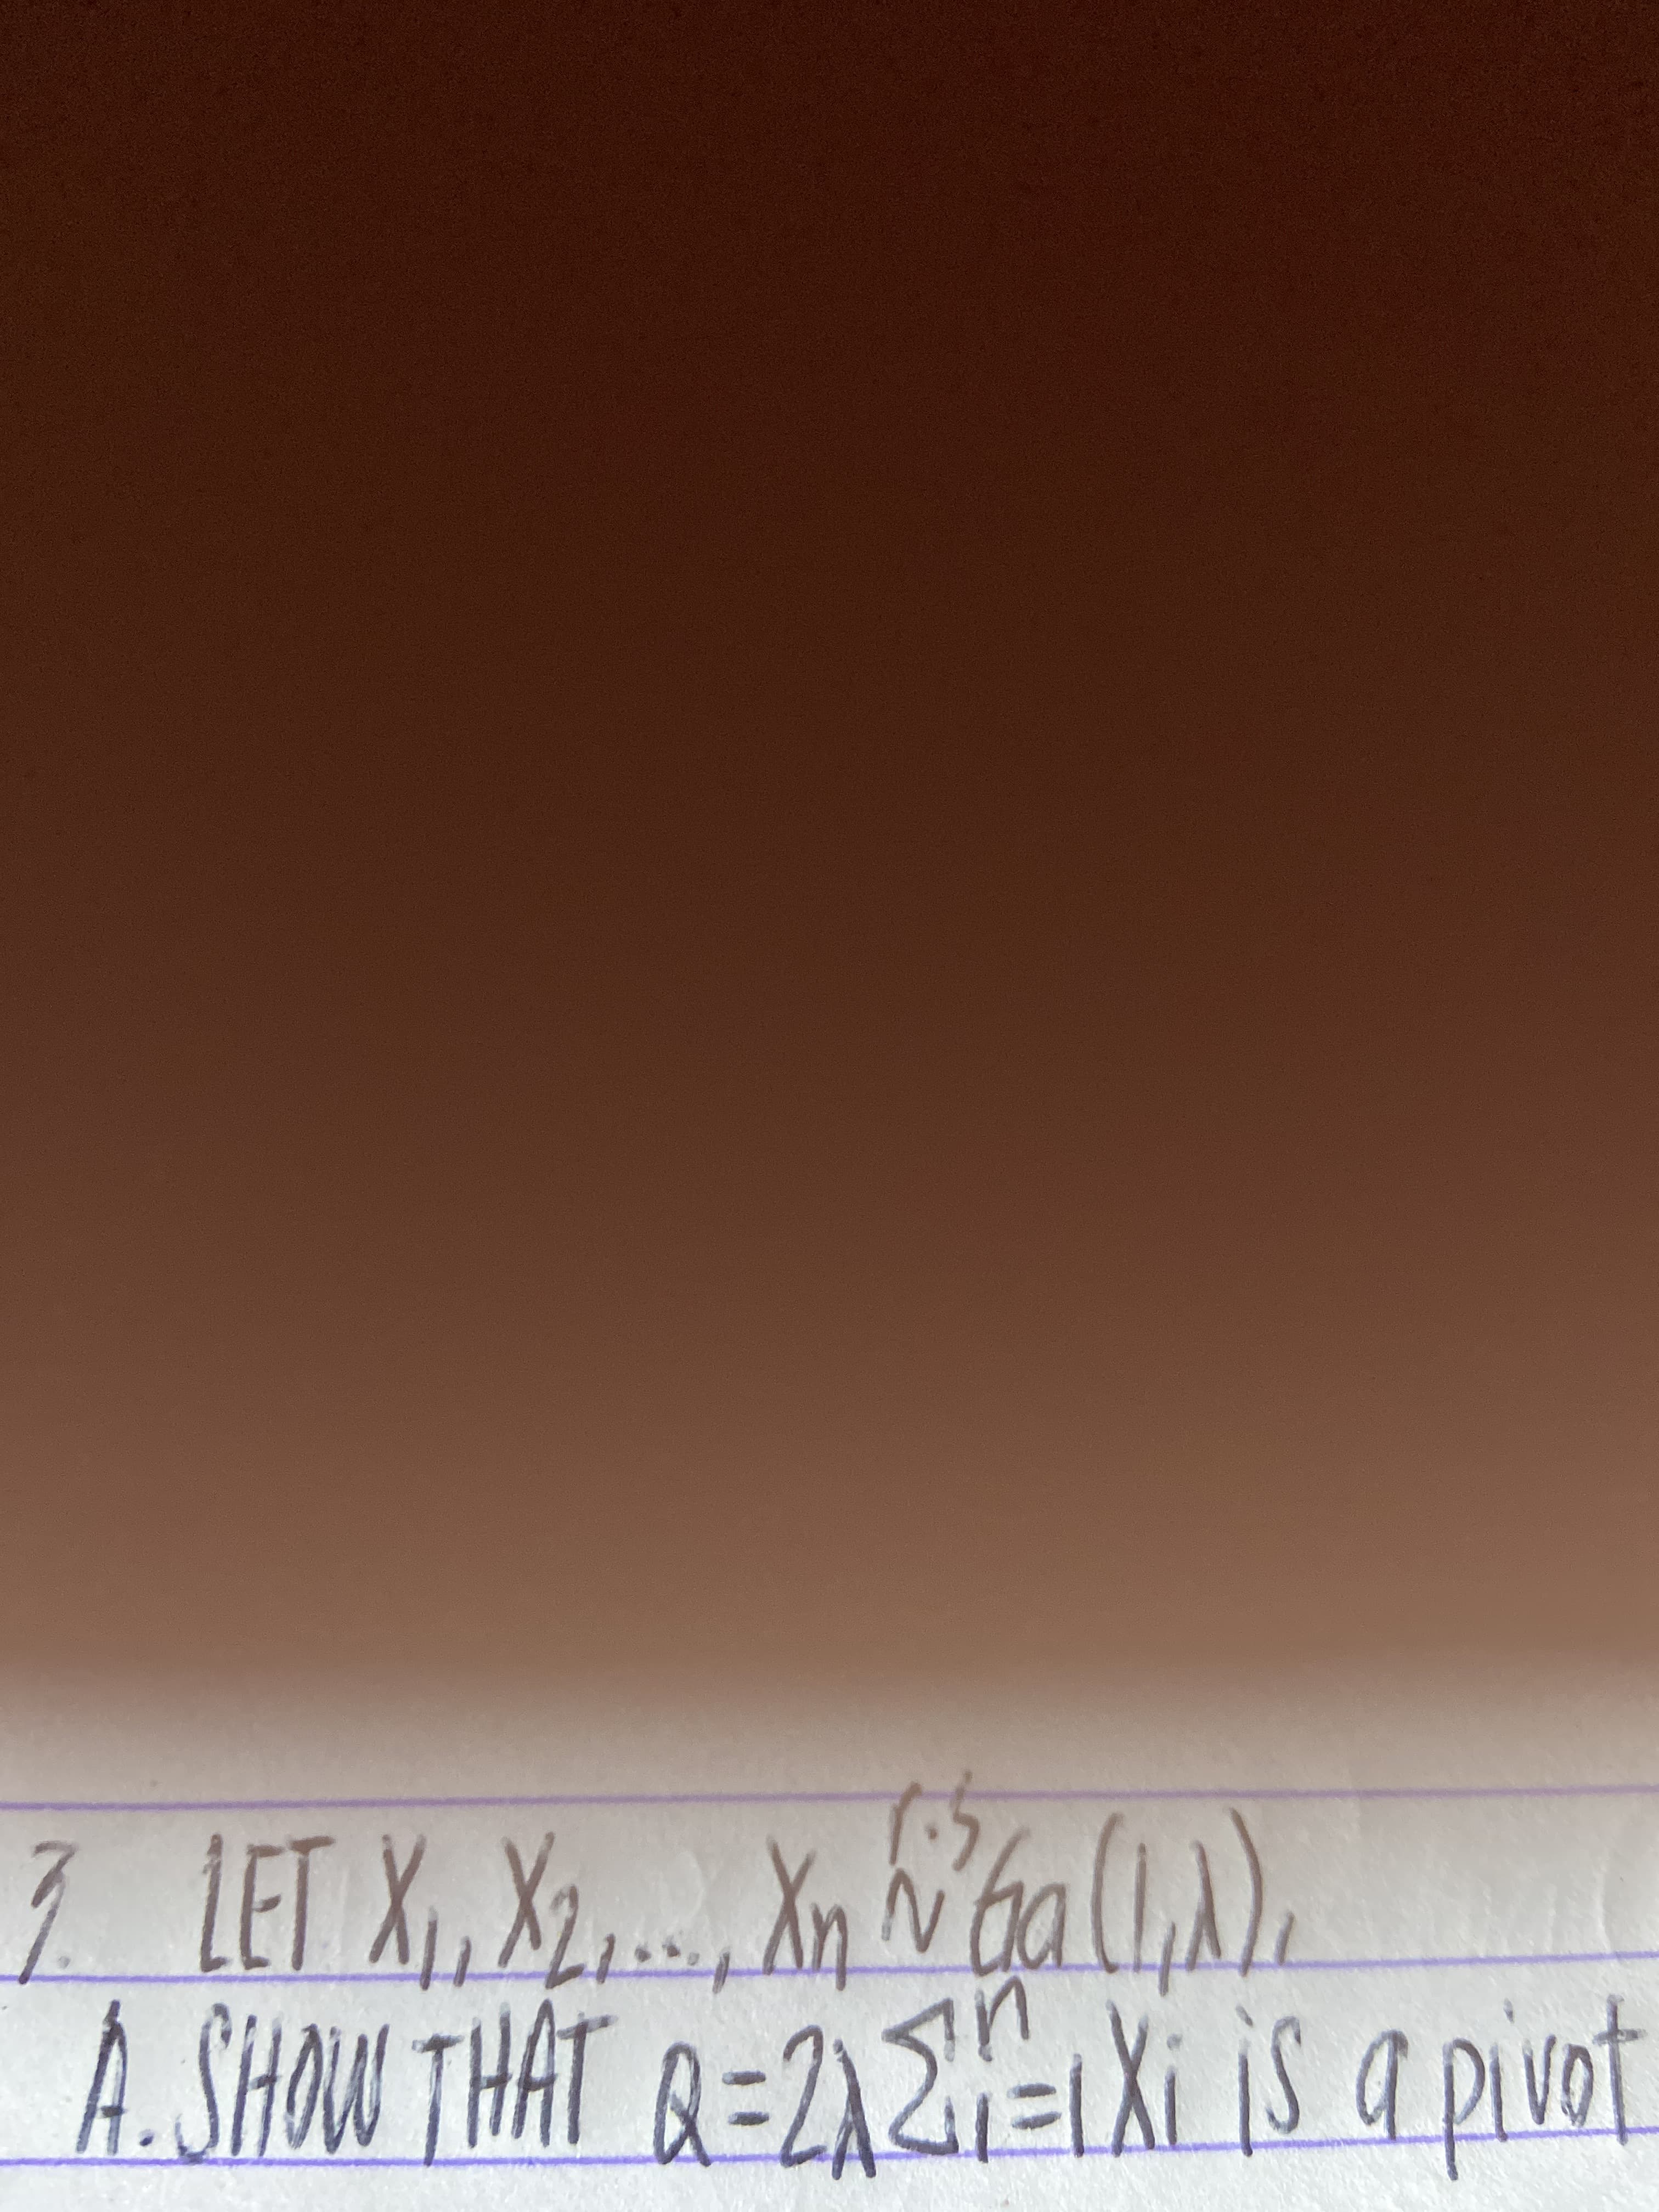 7 LET X, X, Xp ba (.
A. SHON THAT Q=212=1Xi iS a pivot
